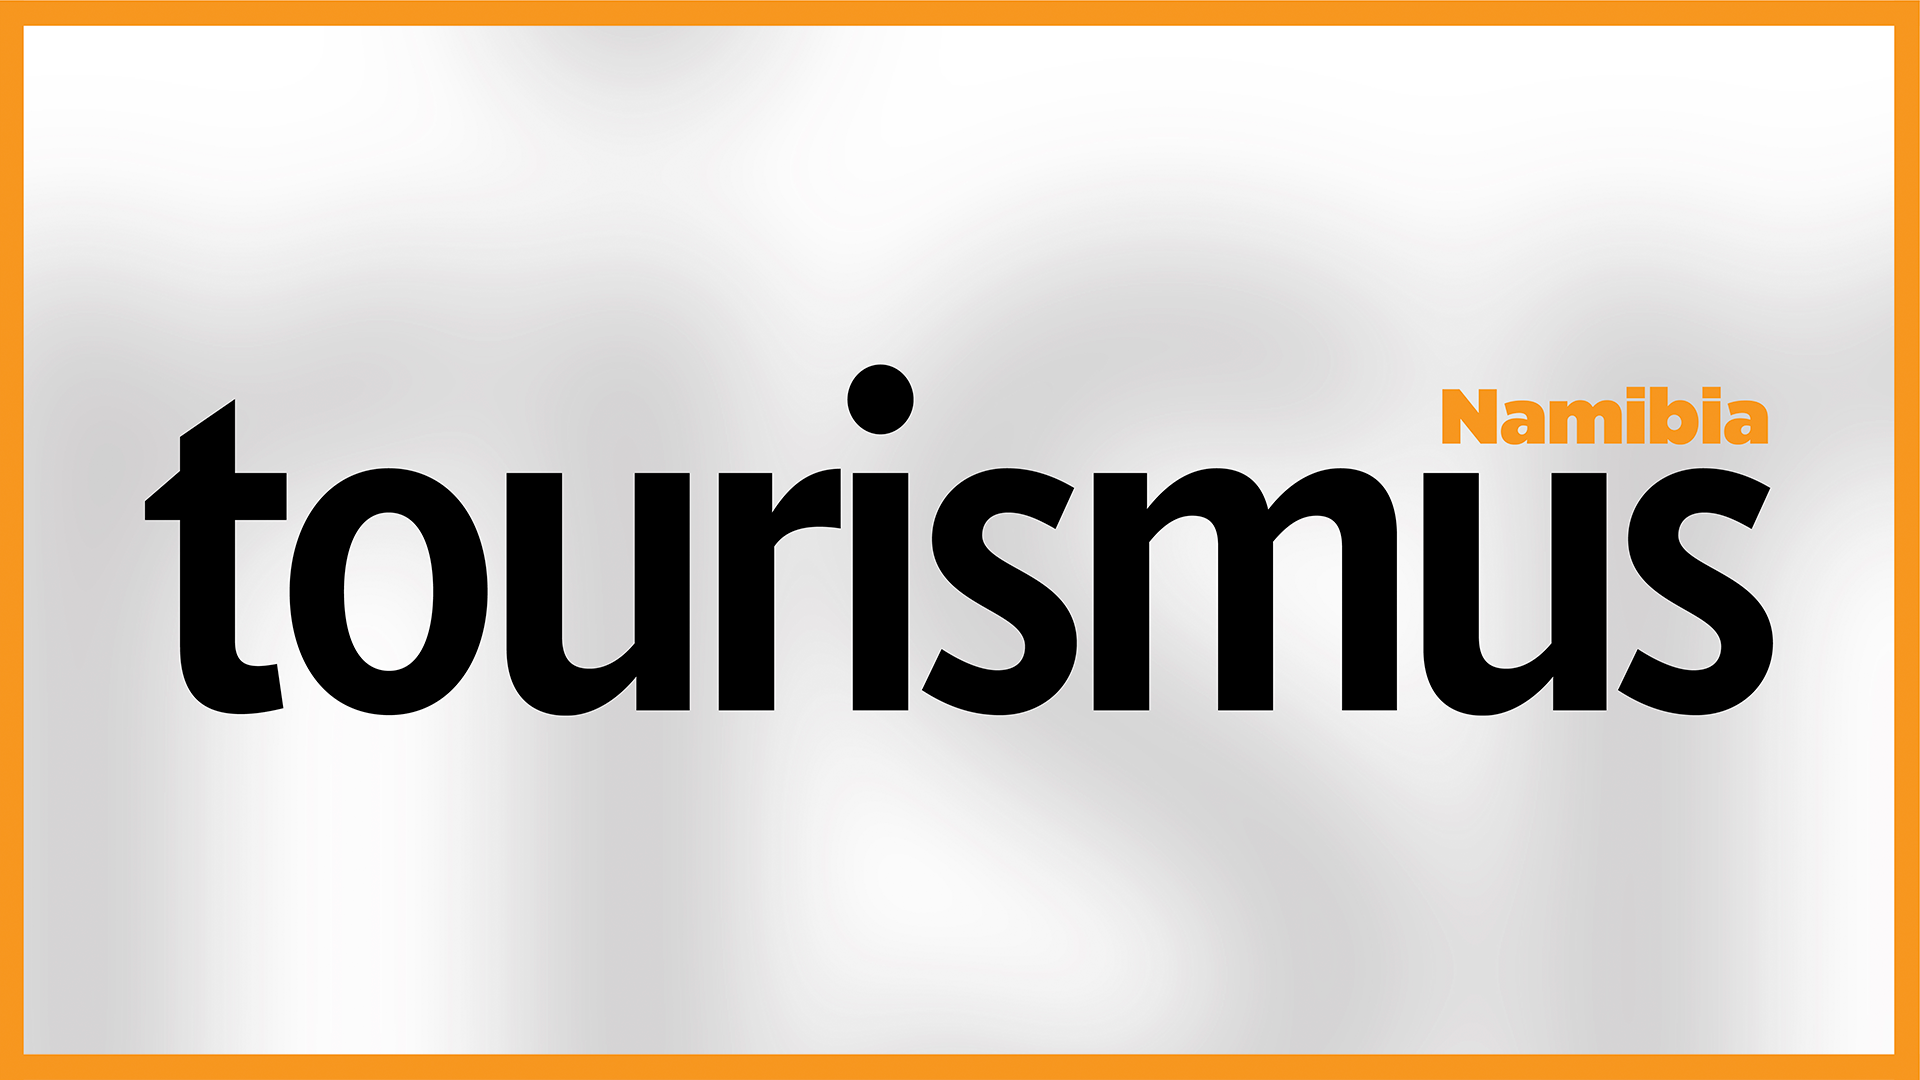 Tourismus Namibia (German) - 11 September 2021